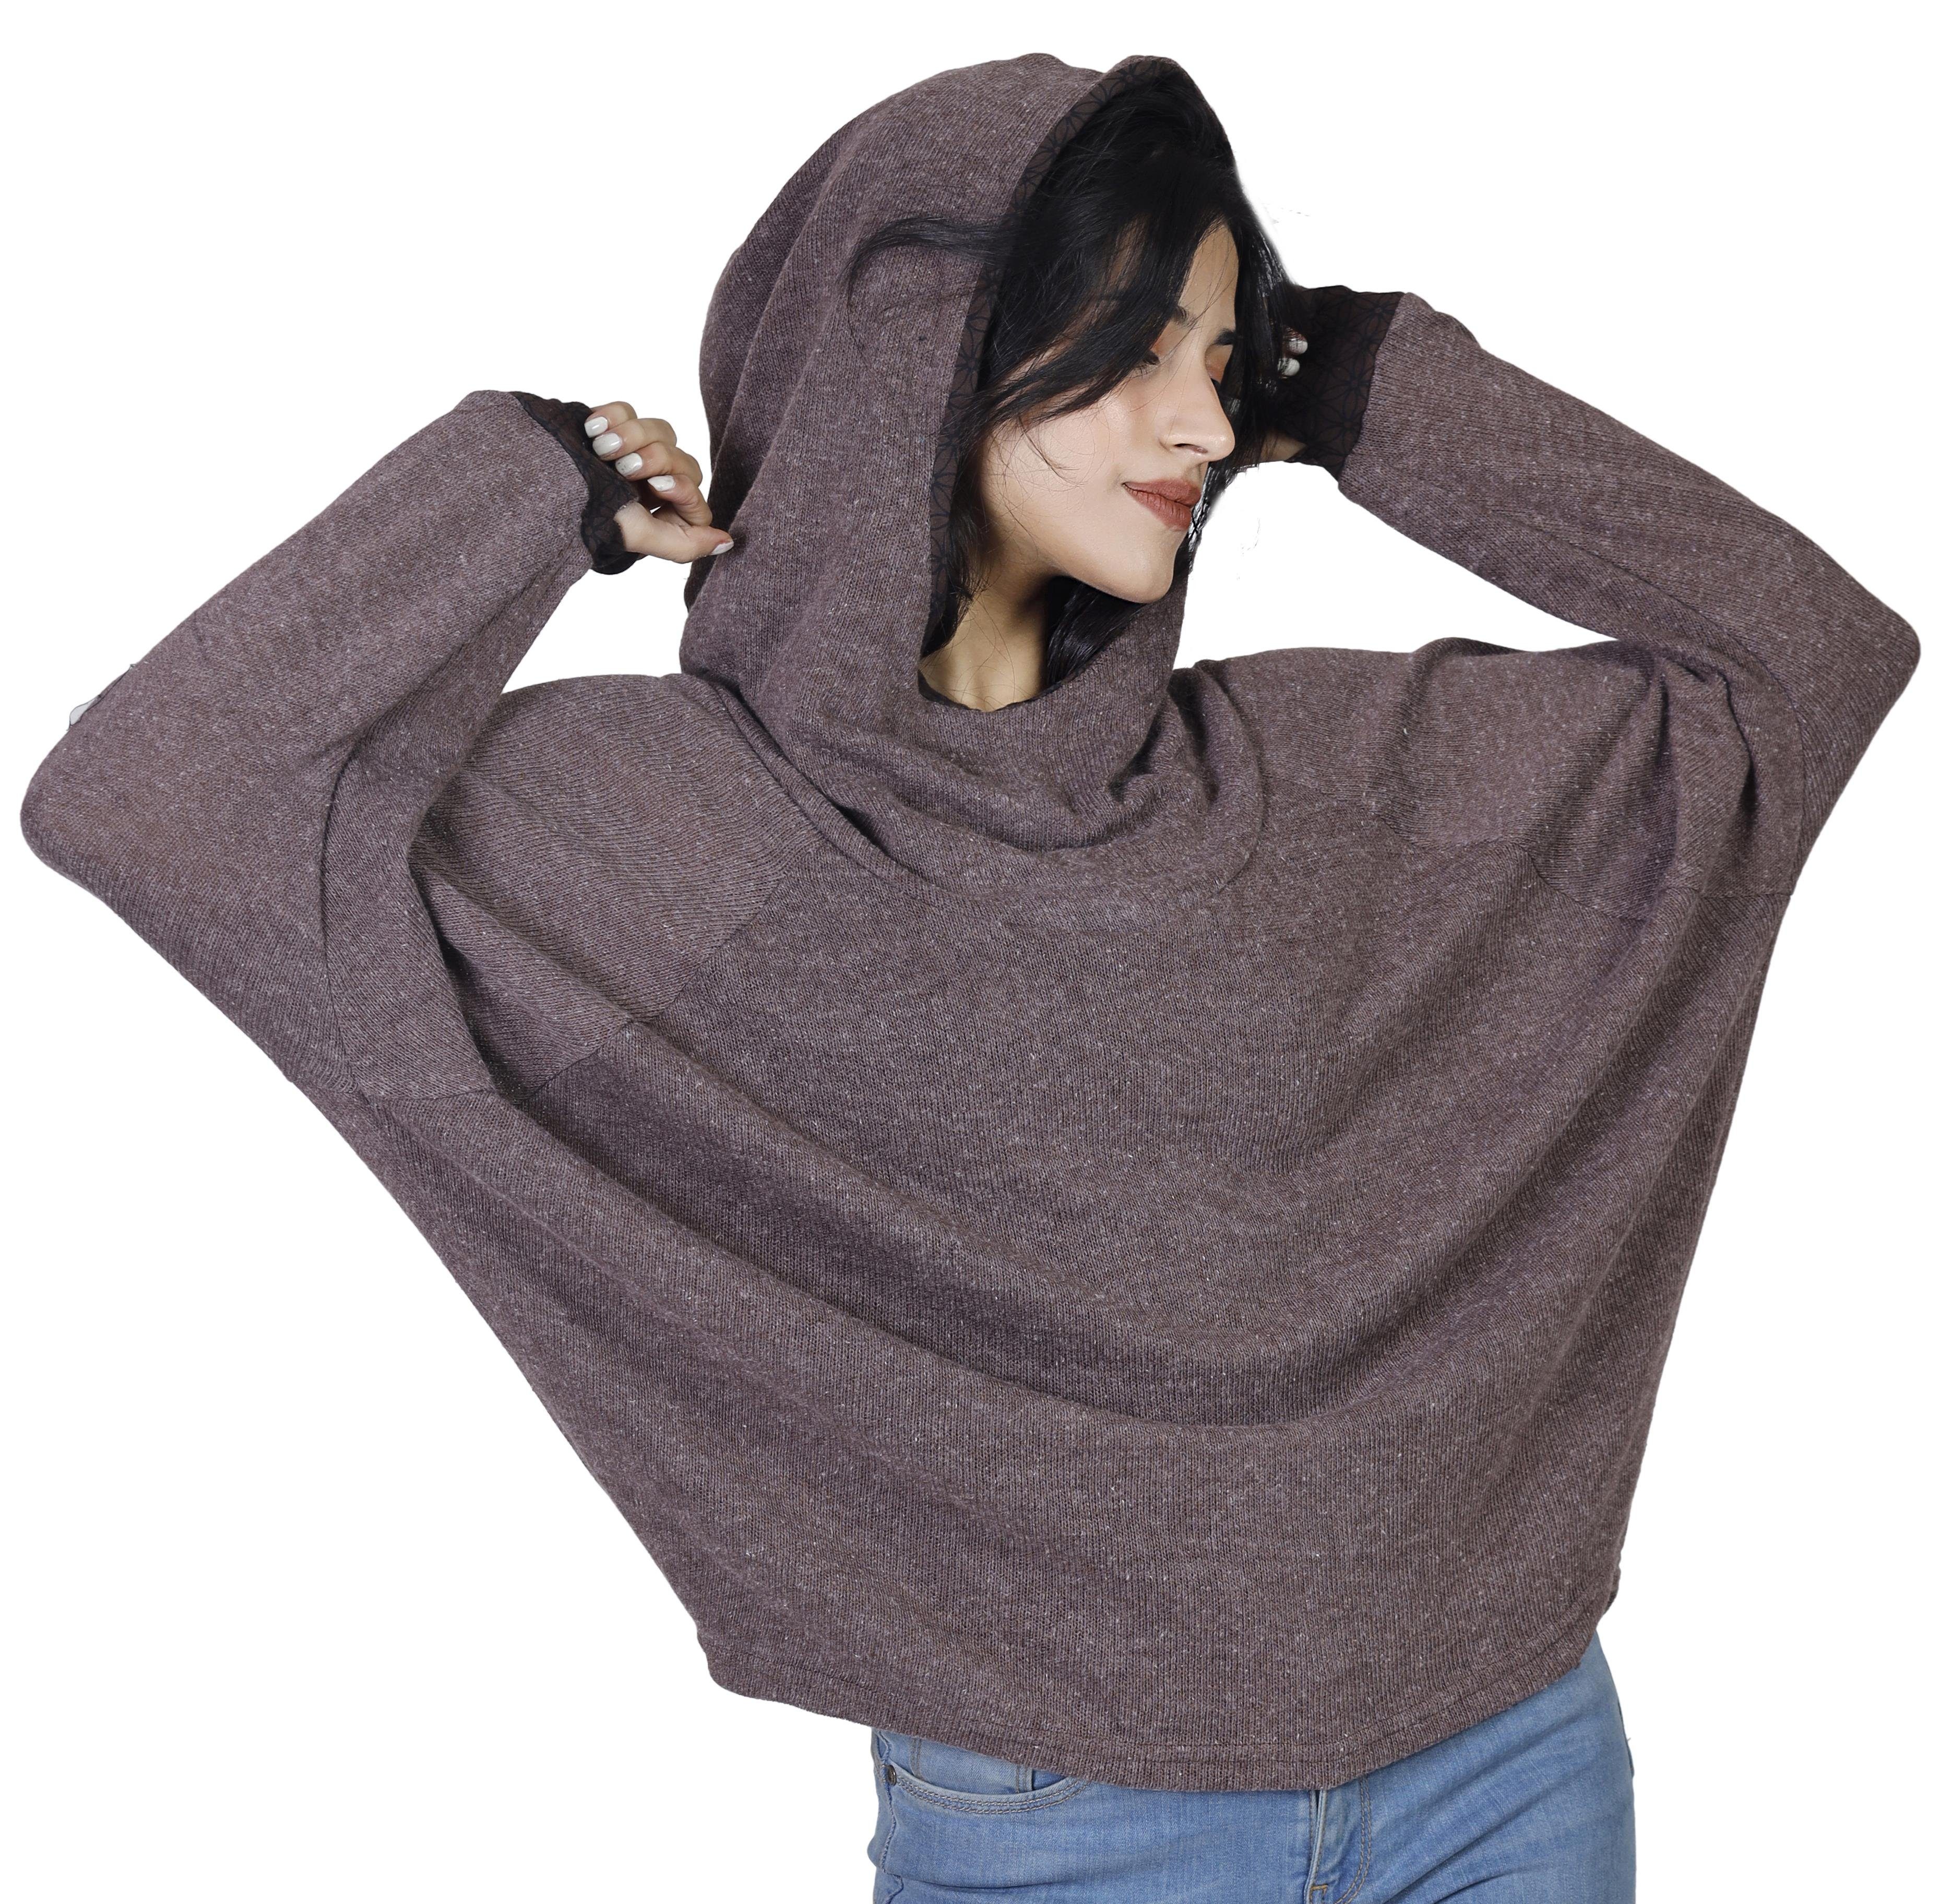 Guru-Shop Longsleeve Hoody, Sweatshirt, Pullover, Kapuzenpullover braun alternative Bekleidung 